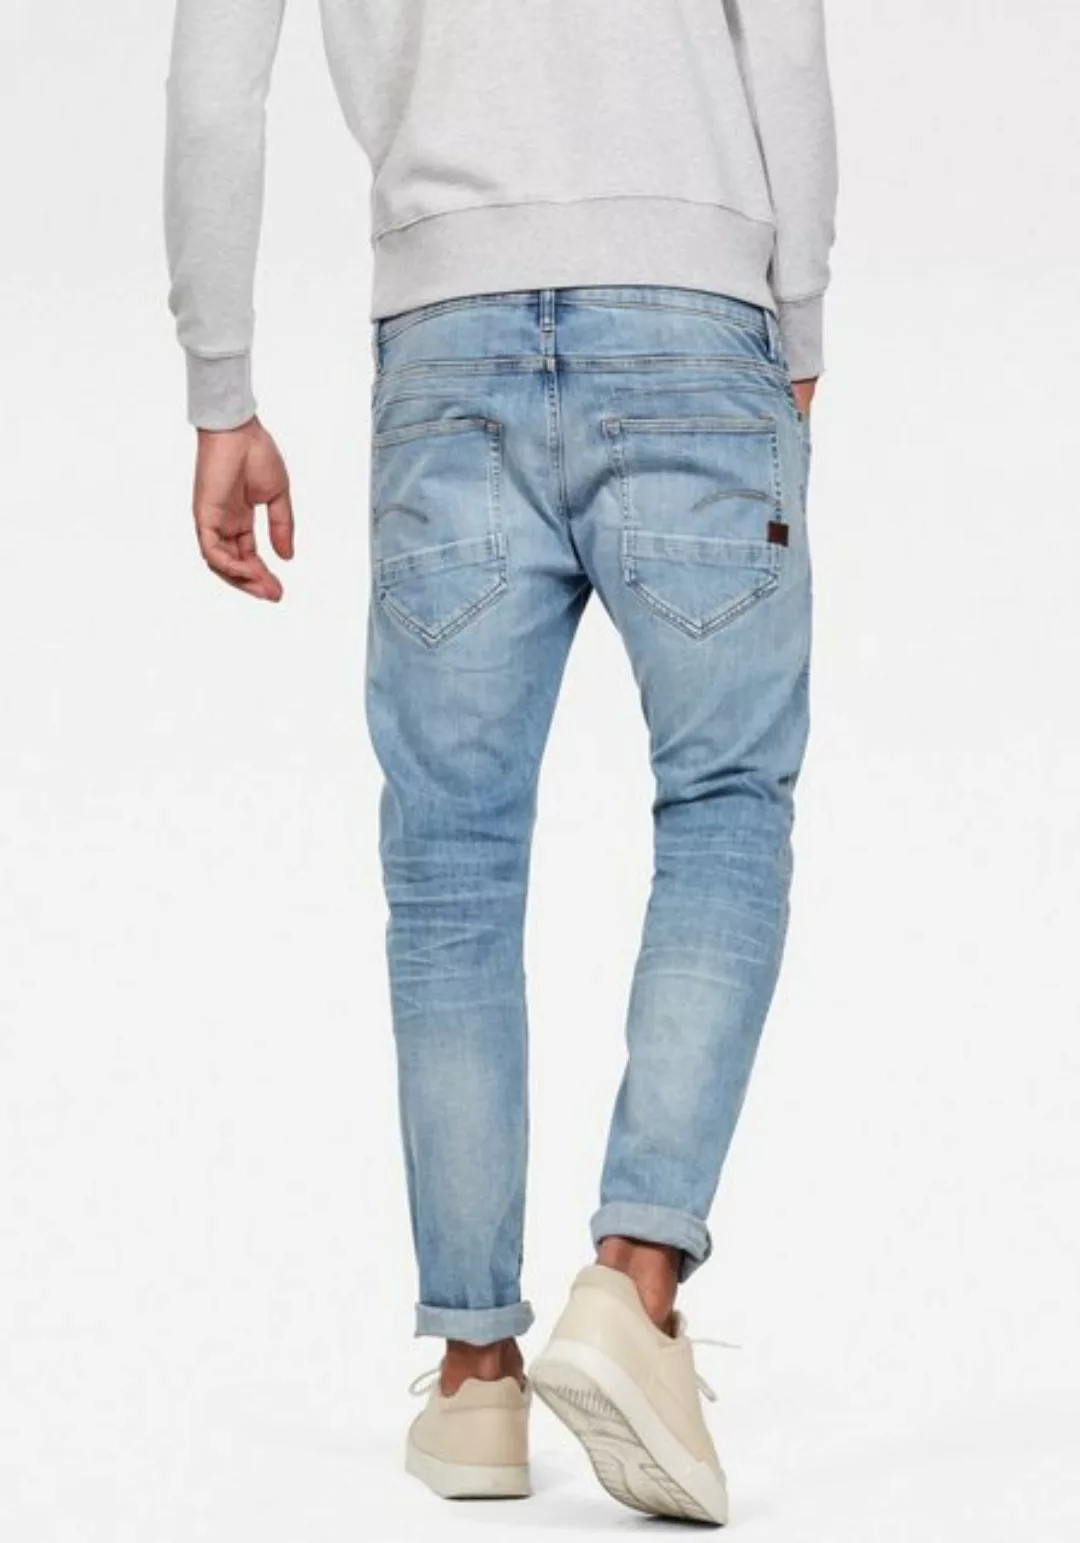 G-star D-staq 5 Pocket Slim Jeans 34 Light Indigo Aged günstig online kaufen